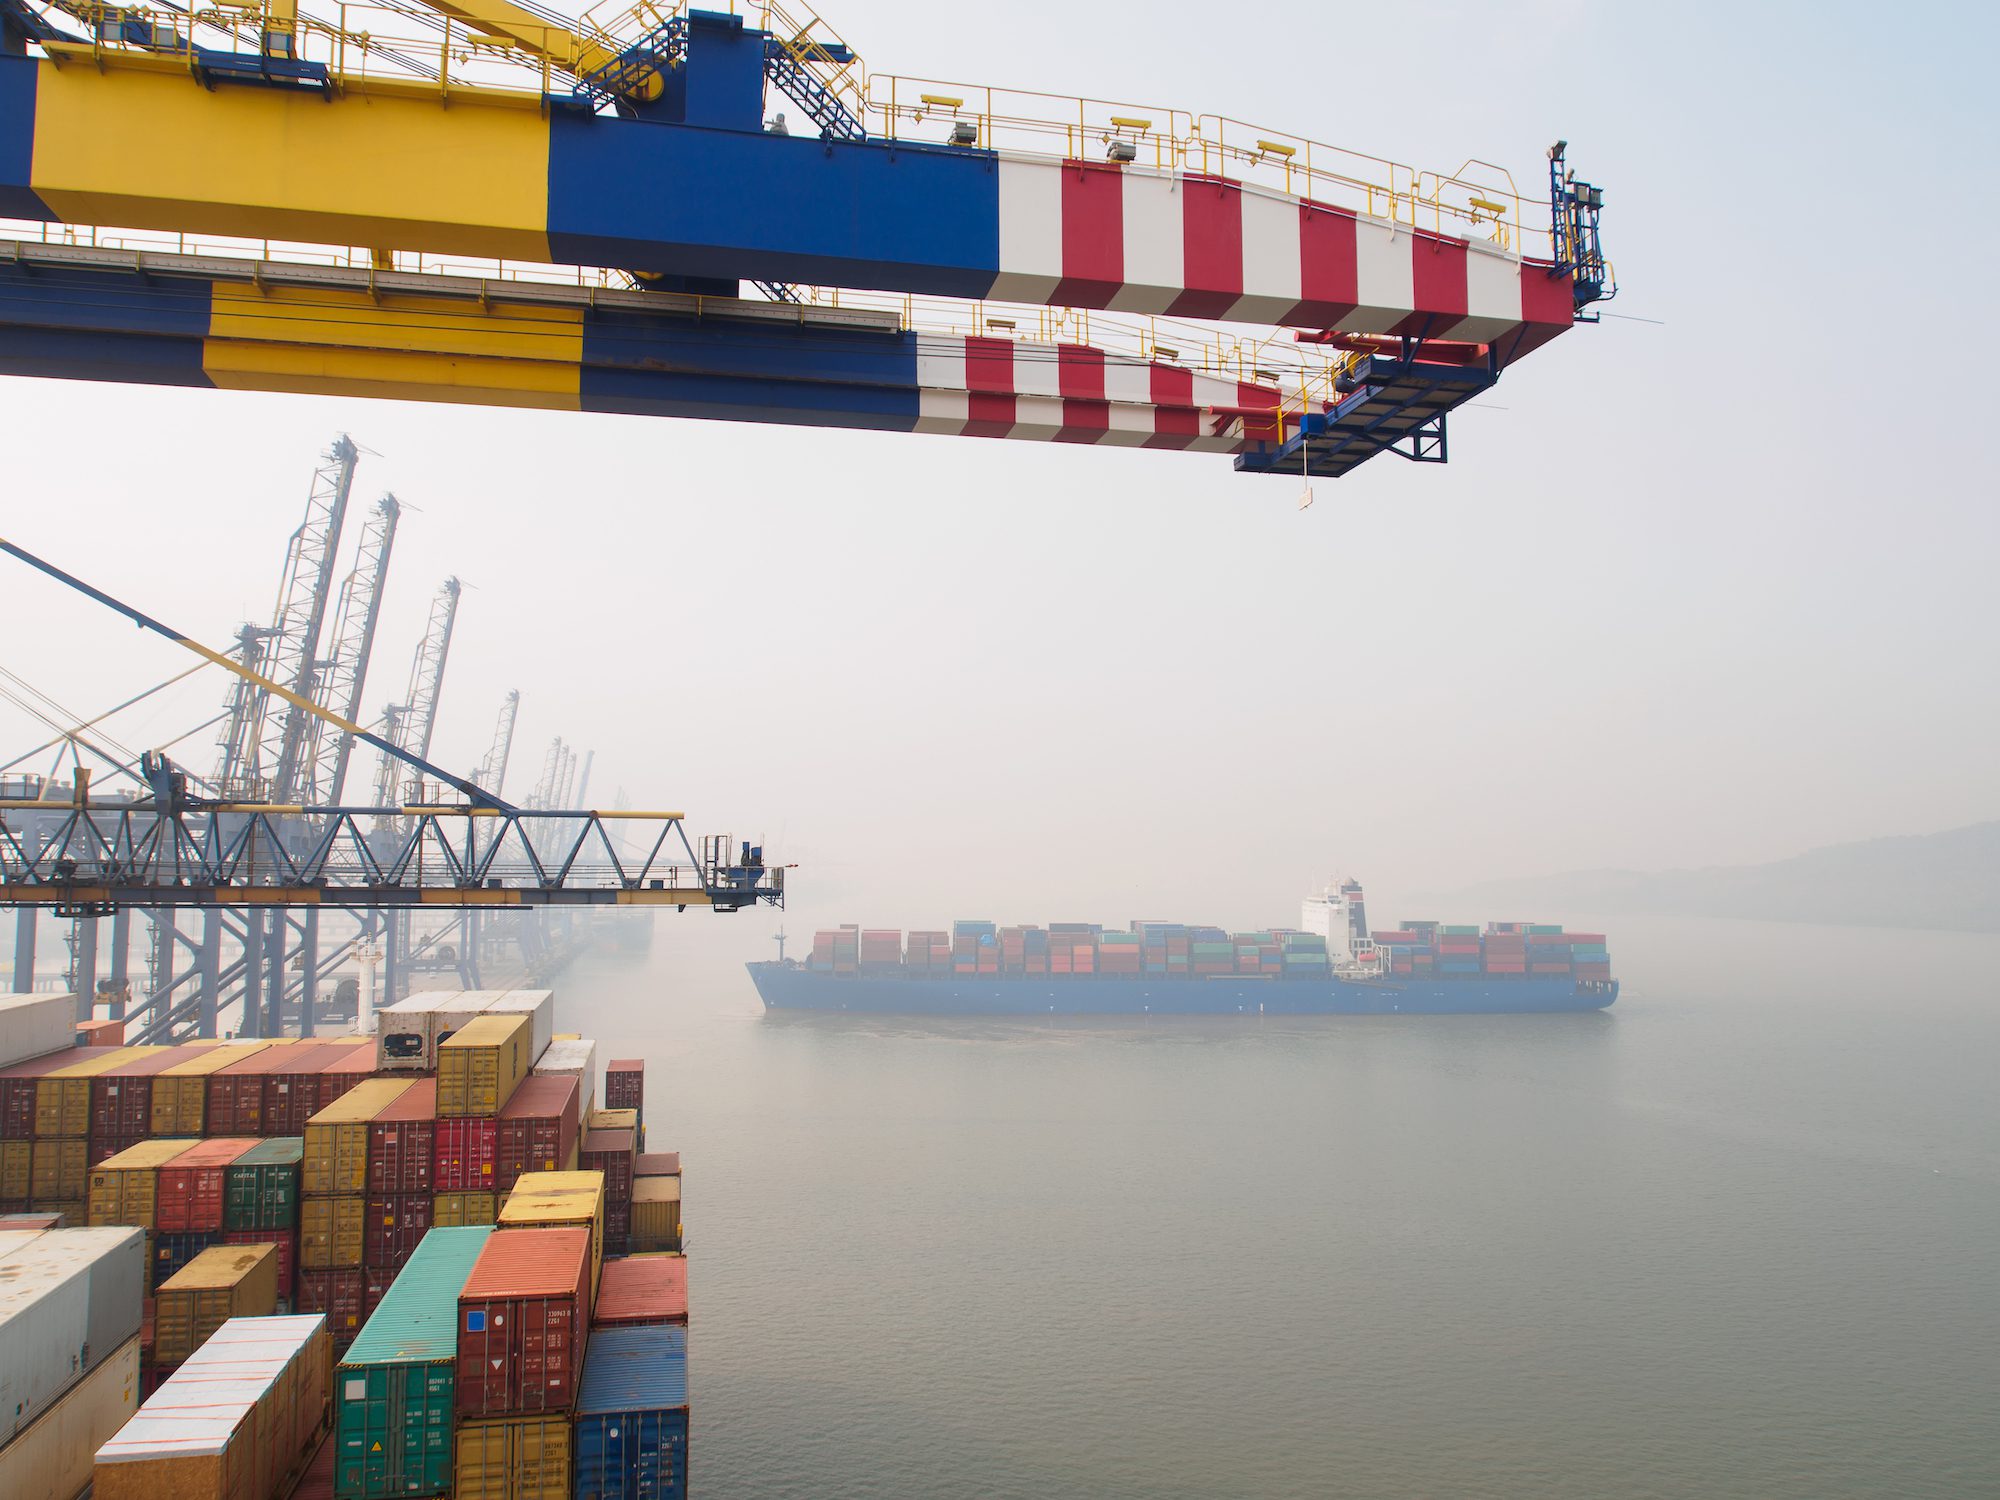 India’s Trade Goals Run Into a Big Ship Problem